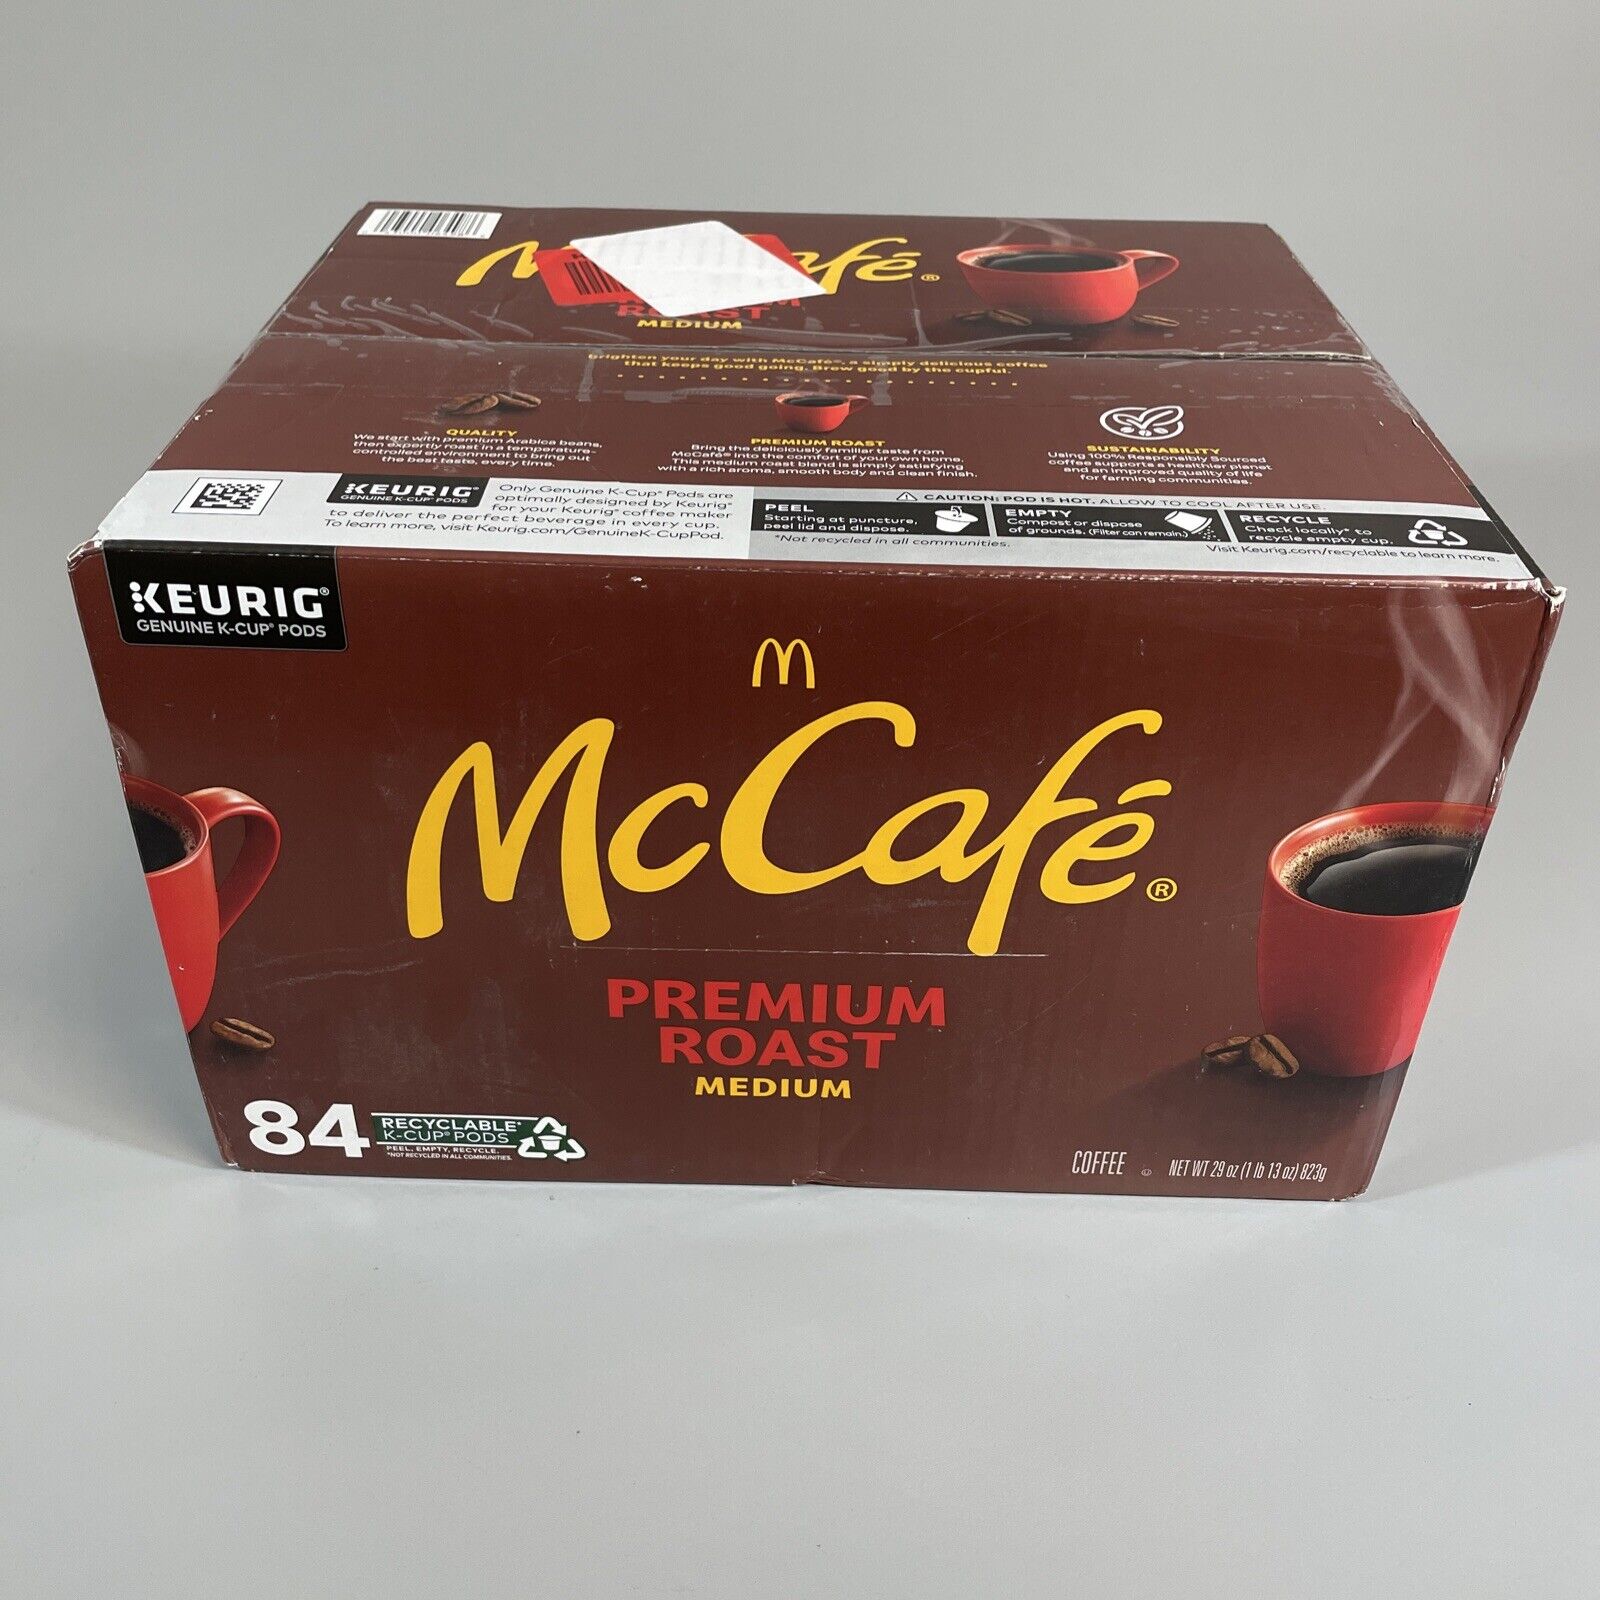 Keurig K-Cup McCafe Premium Roast Medium Blend Coffee, 84 Pods B